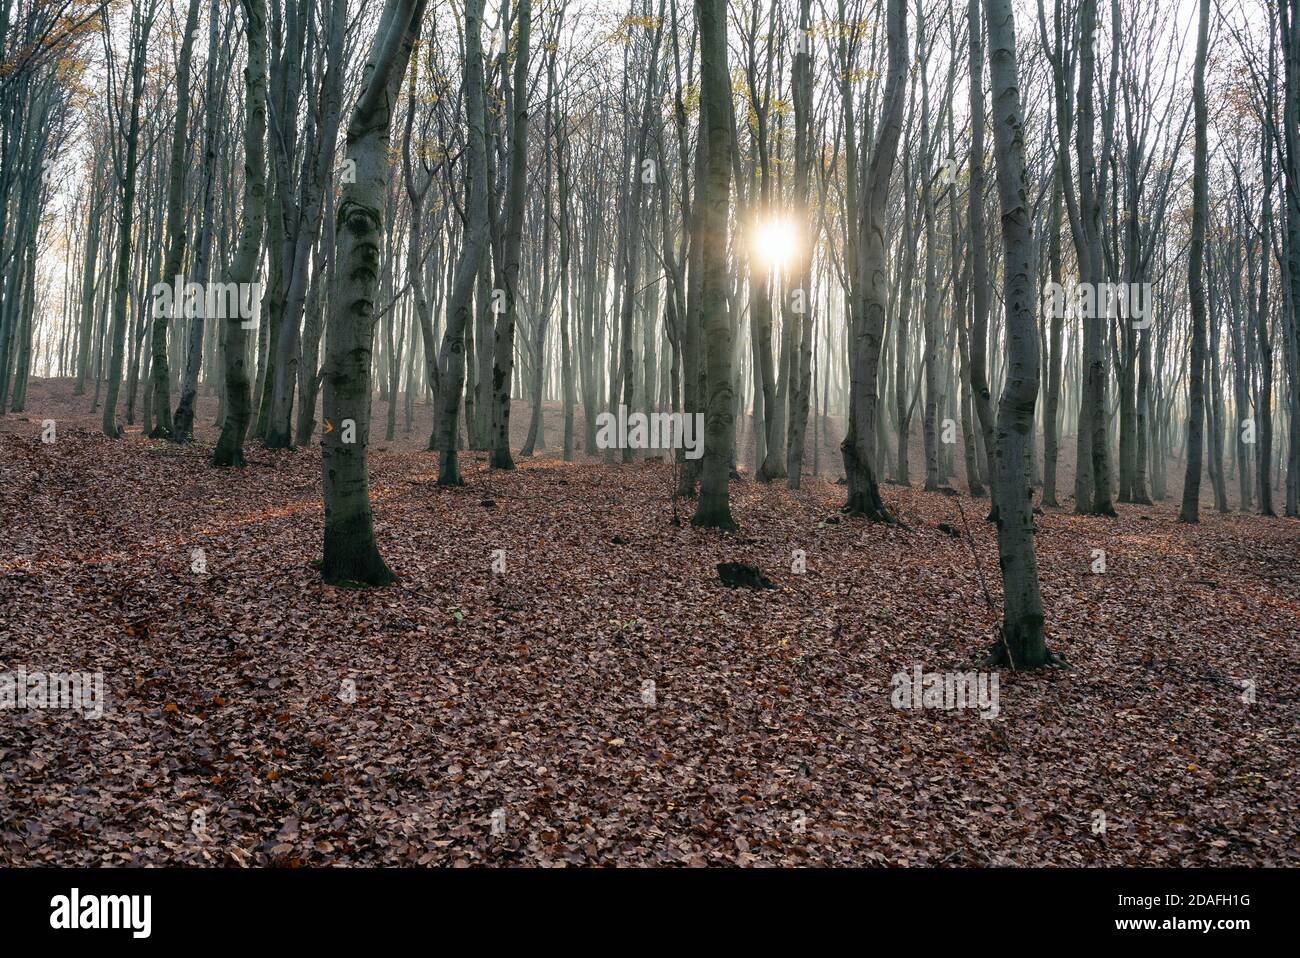 Faggeta in autunno, stagione autunnale. Foglie marroni a terra. Raggi di sole dagli alberi. Foresta mistica in Slesia, Polonia. Foto Stock